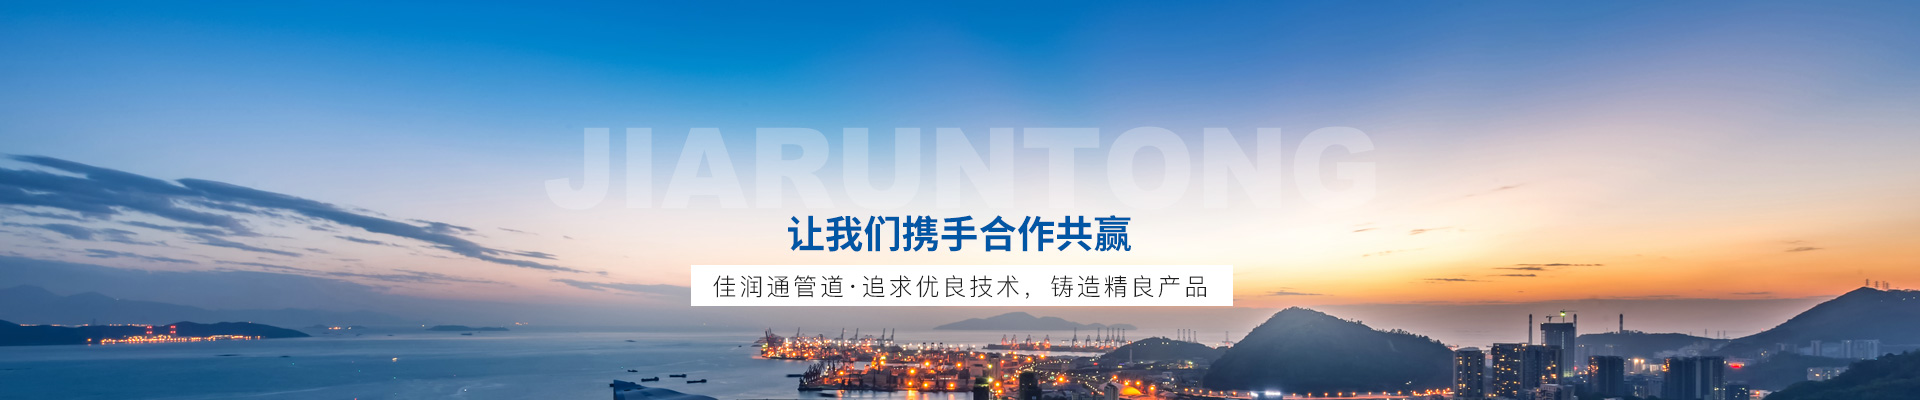 贵州省质监局发布2015年橡胶管产品质量监督检查成果